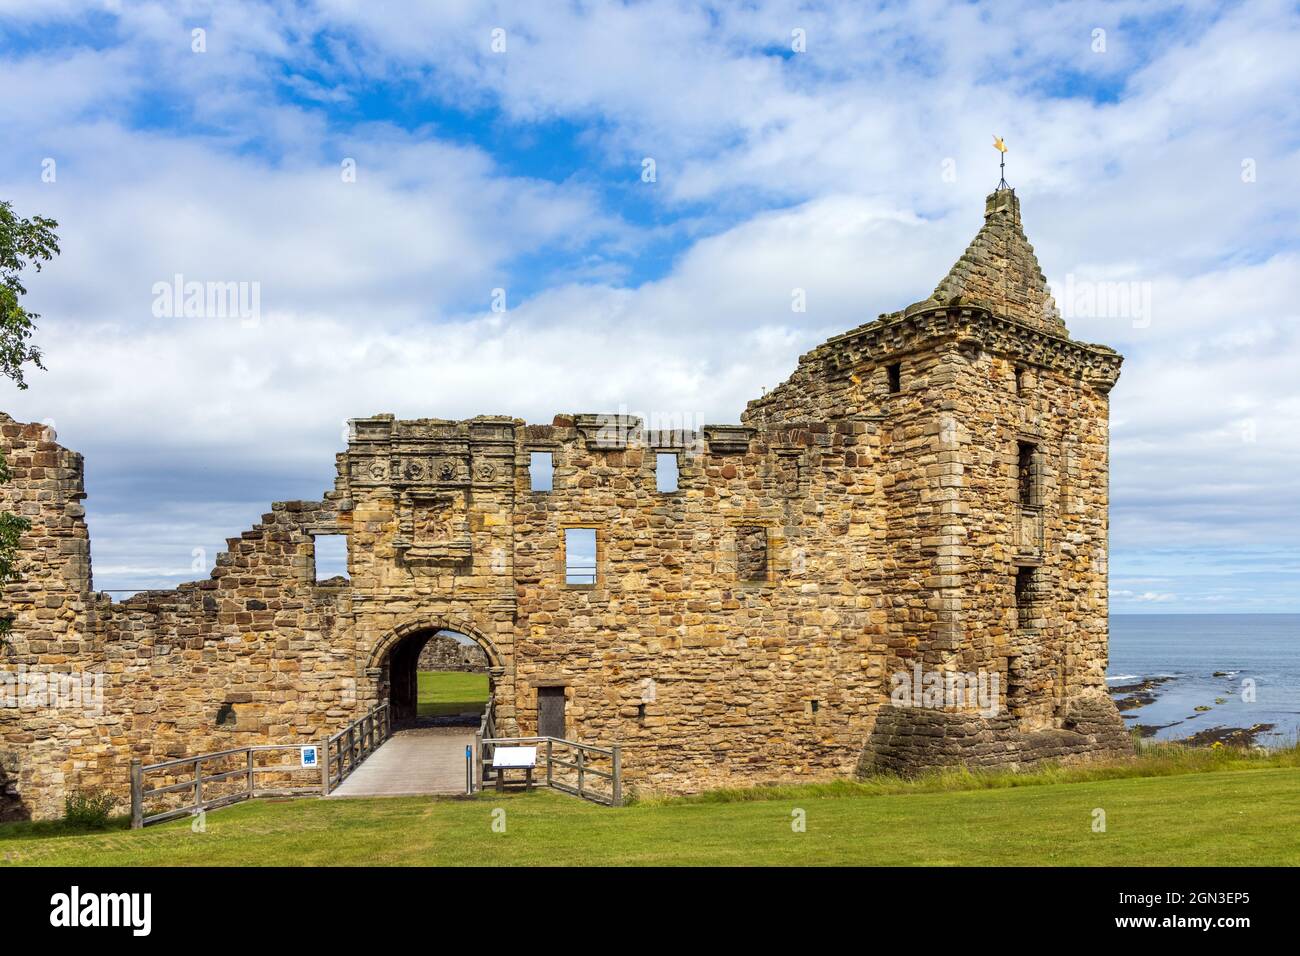 Die historischen Überreste von St. Andrews Castle, einer mittelalterlichen Festung aus dem 13. Jahrhundert, die auf einem Felsen nördlich der Stadt in Fife liegt. Stockfoto